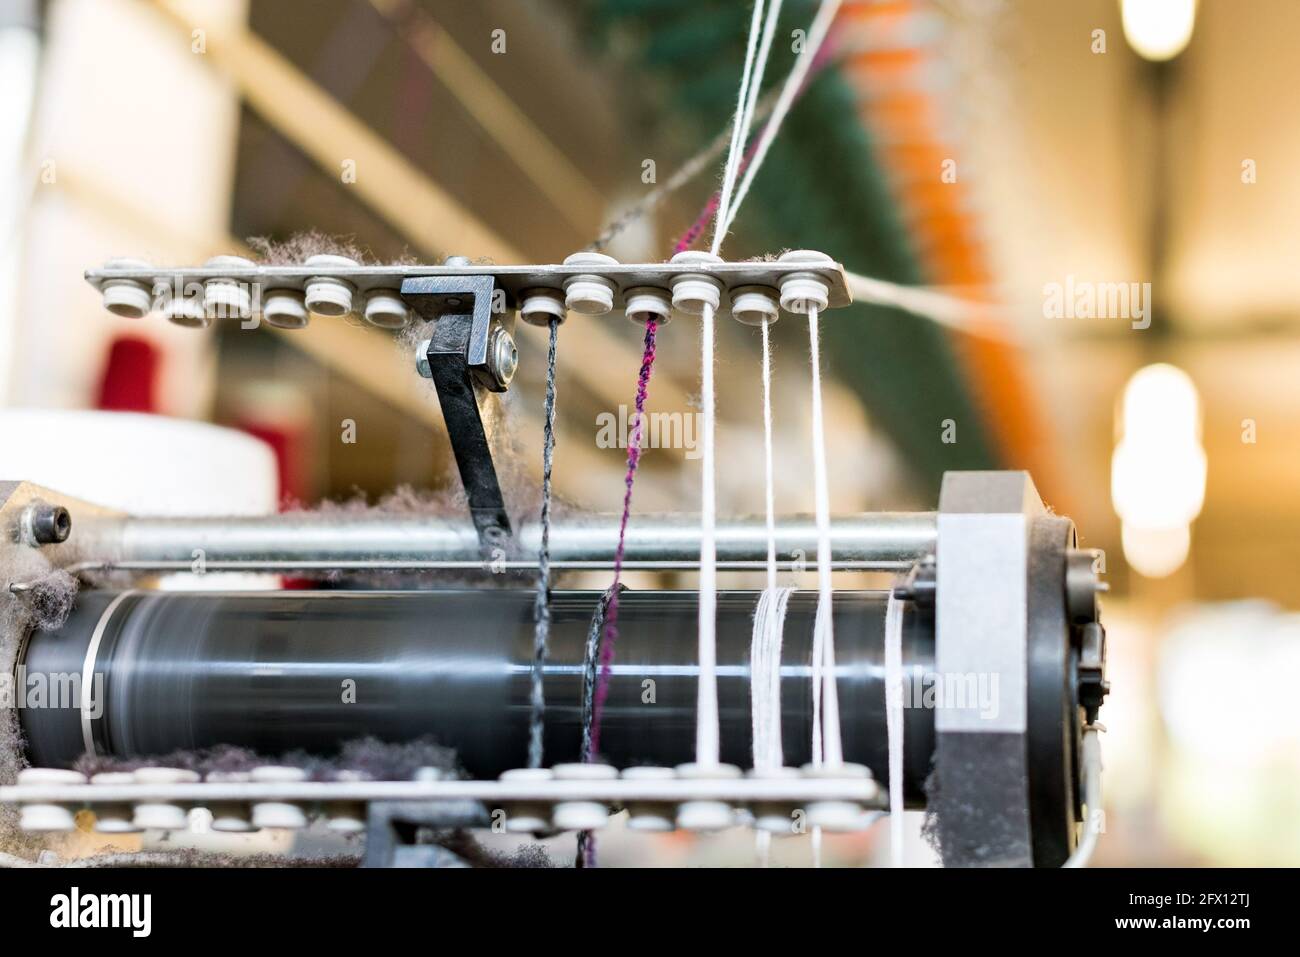 Nahaufnahme des farbigen Kaschmirwollgarns, das durch einen eingefädelt ist Zuführung auf einer handelsüblichen Strickmaschine in einem Strickwaren Fabrik Stockfoto